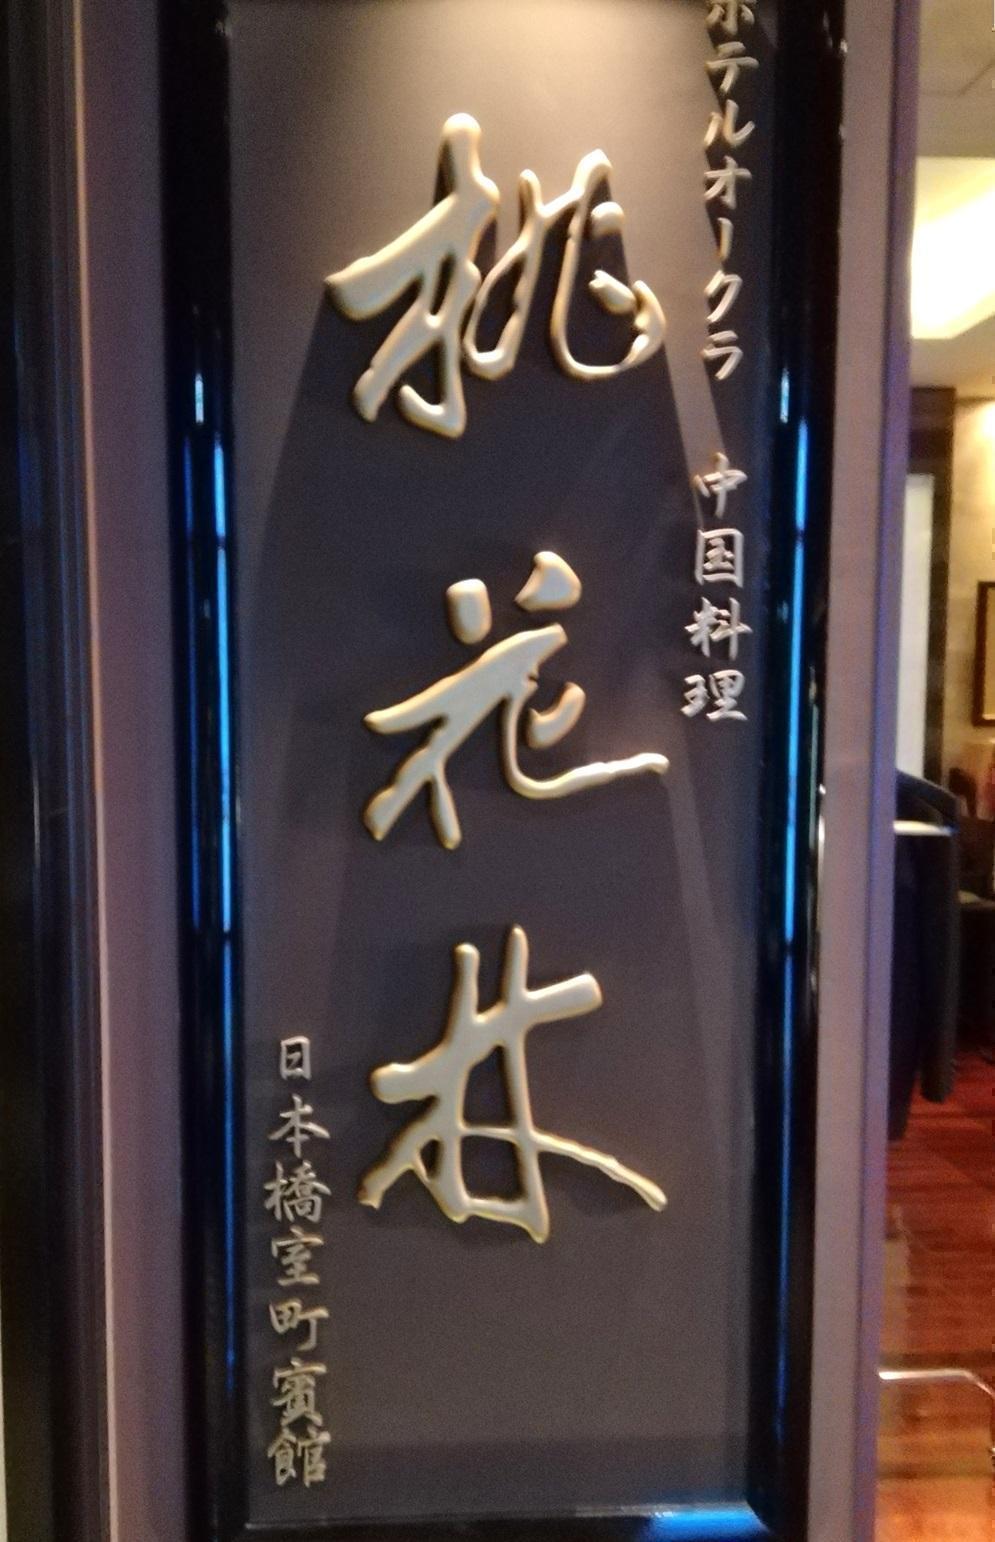 桃花林　日本橋室町賓館 ホテルオークラ伝統の中国料理
　本格広東料理を日本橋で
　そのランチを堪能しました
　　～　桃花林　日本橋室町賓館　～